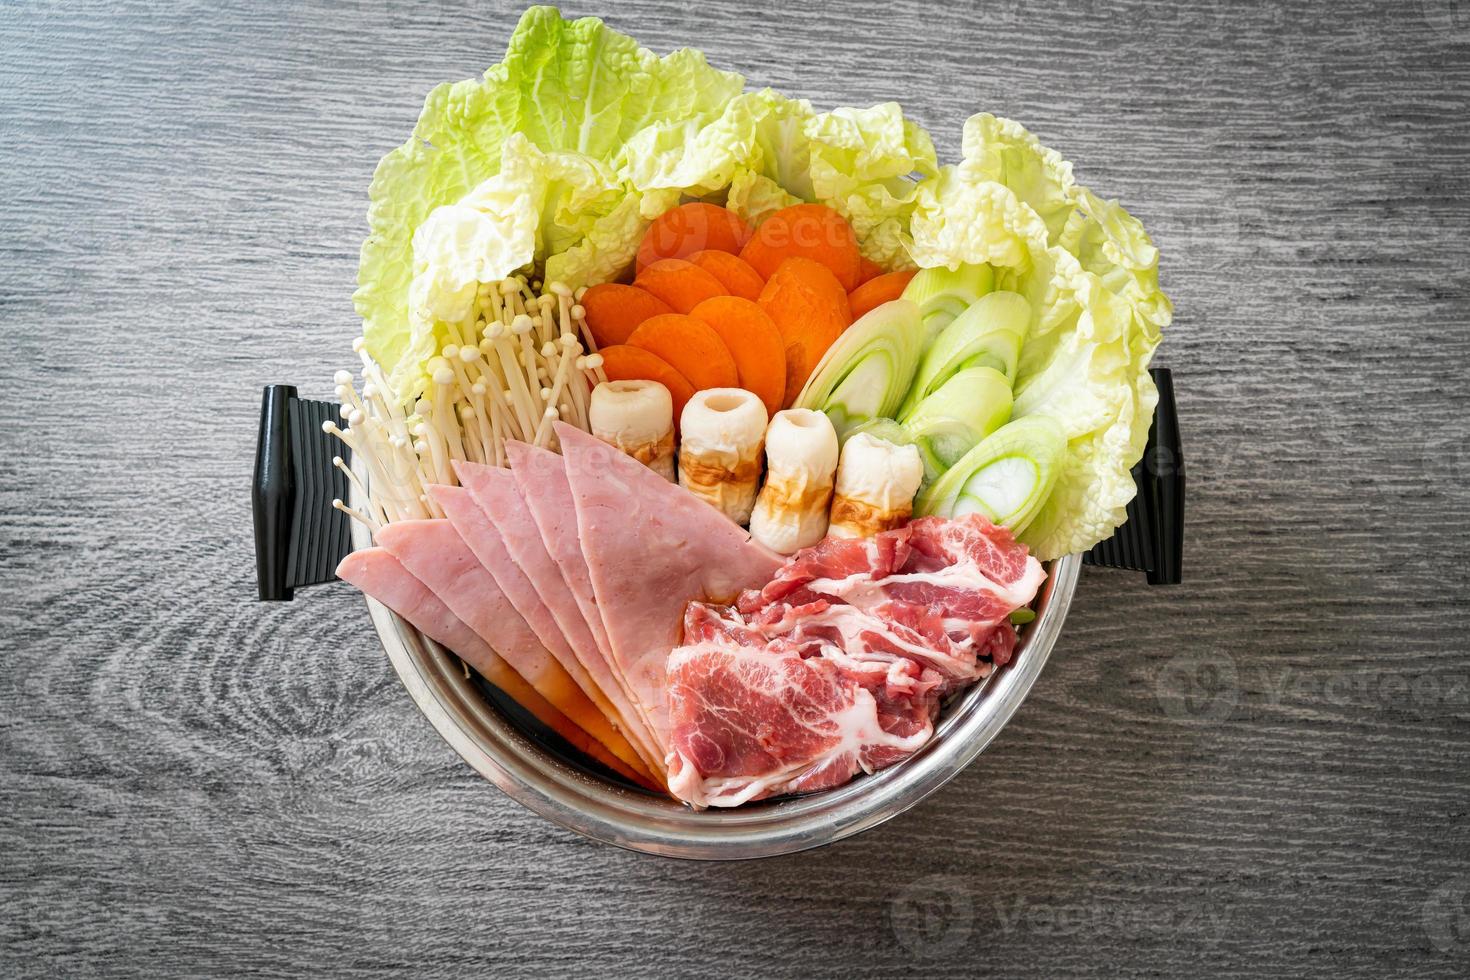 Sukiyaki o shabu sopa negra de olla caliente con carne cruda y vegetales - estilo de comida japonesa foto